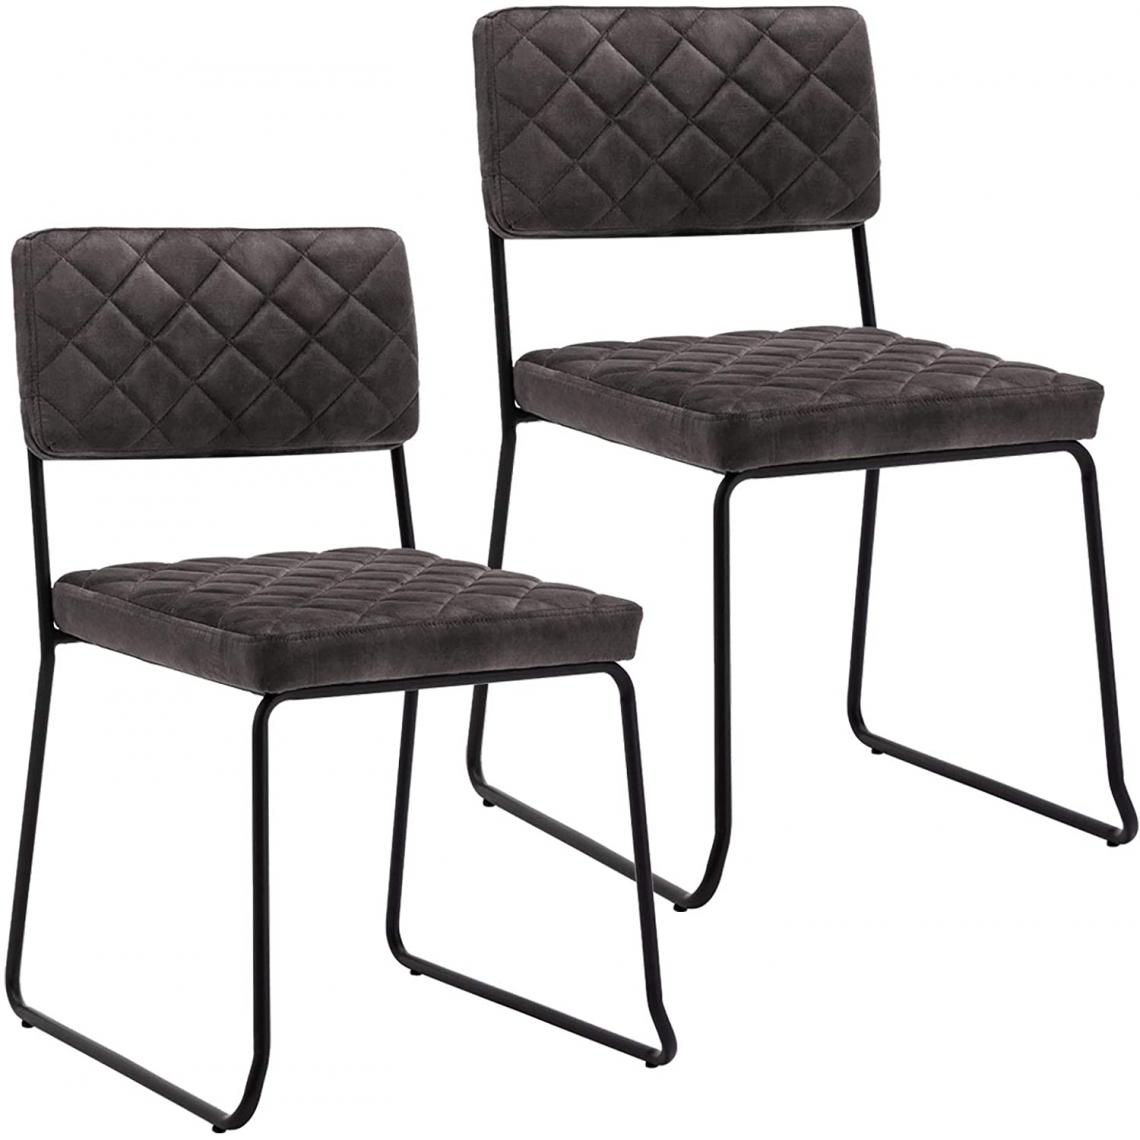 Decoshop26 - Lot de 2 chaises visiteur fauteuil salle à manger bureau en velours marron foncé rembourrée BUR09089 - Chaises